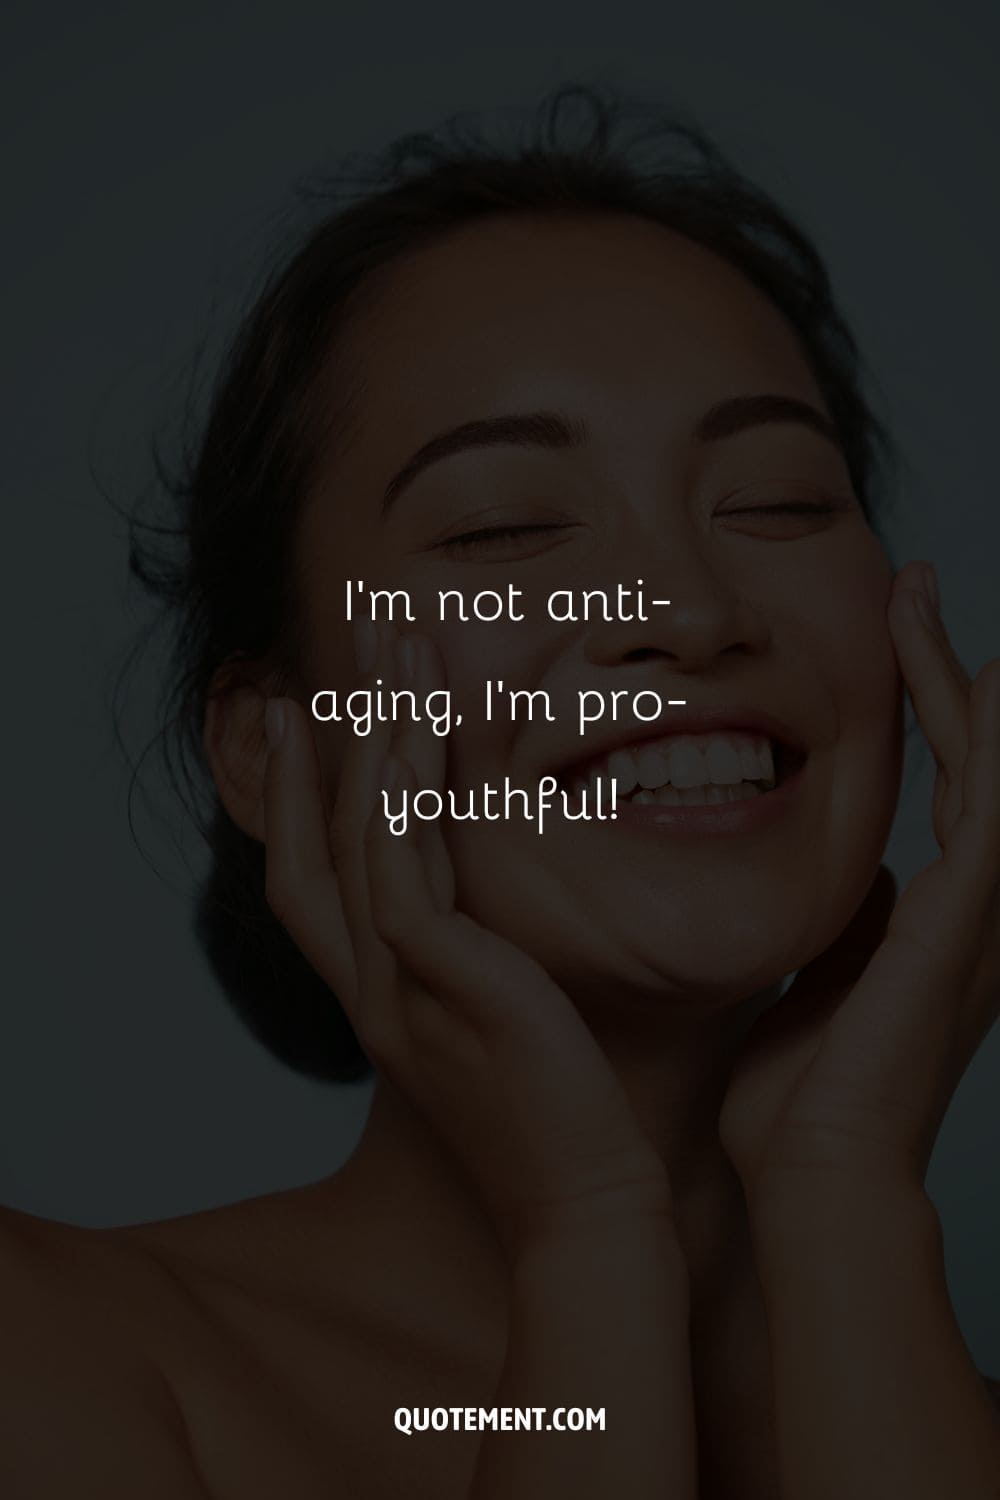 I’m not anti-aging, I’m pro-youthful!